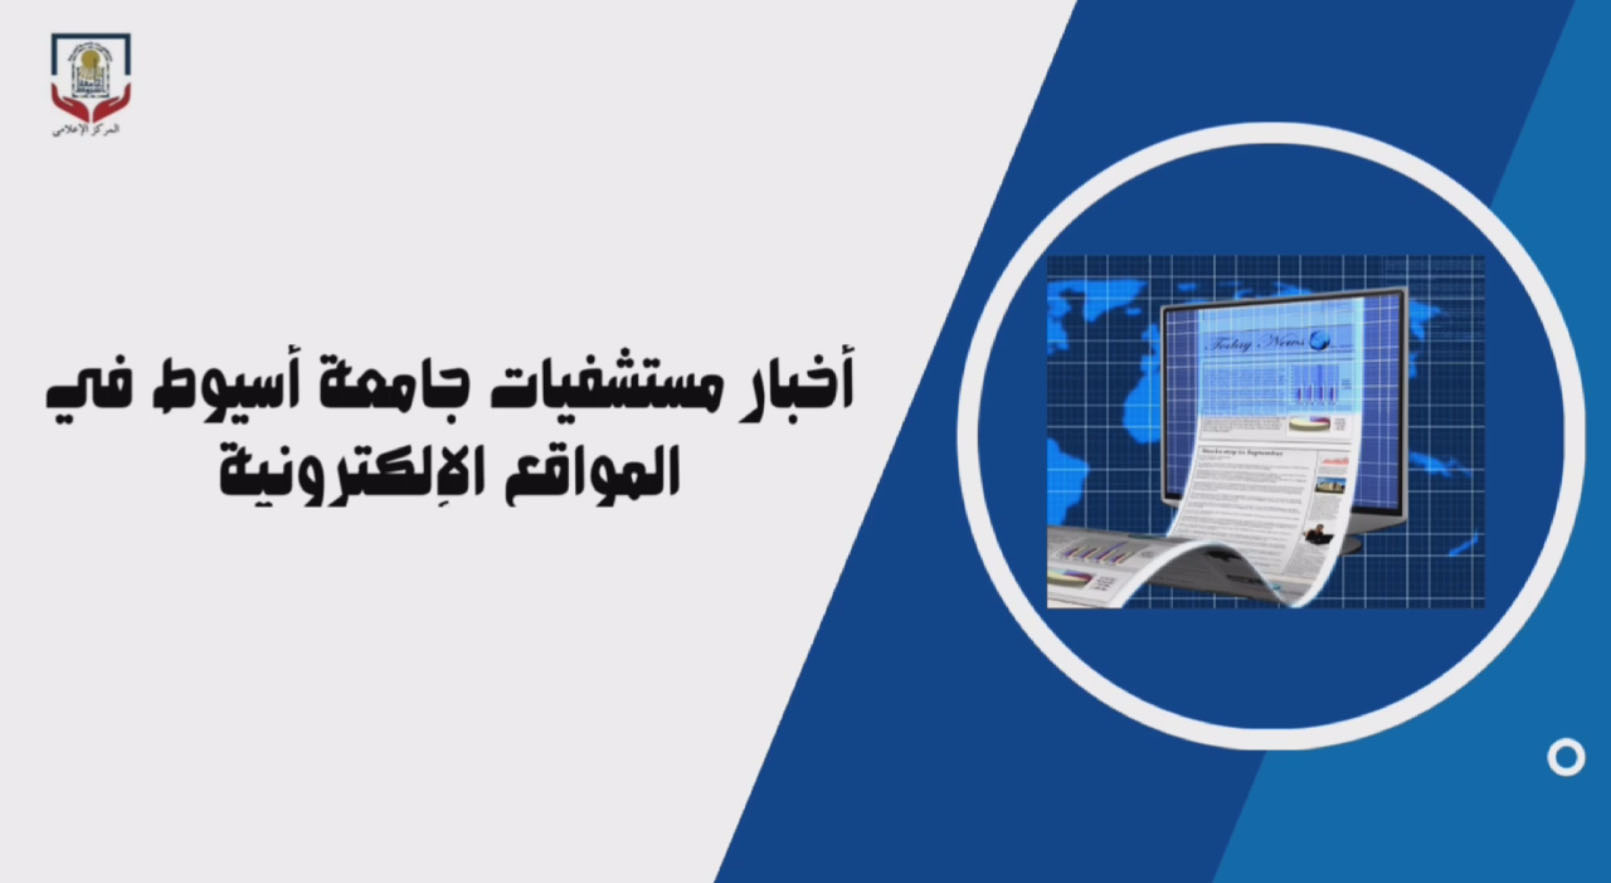 أخبار مستشفيات جامعة أسيوط في الصحف والمواقع الإلكترونية3